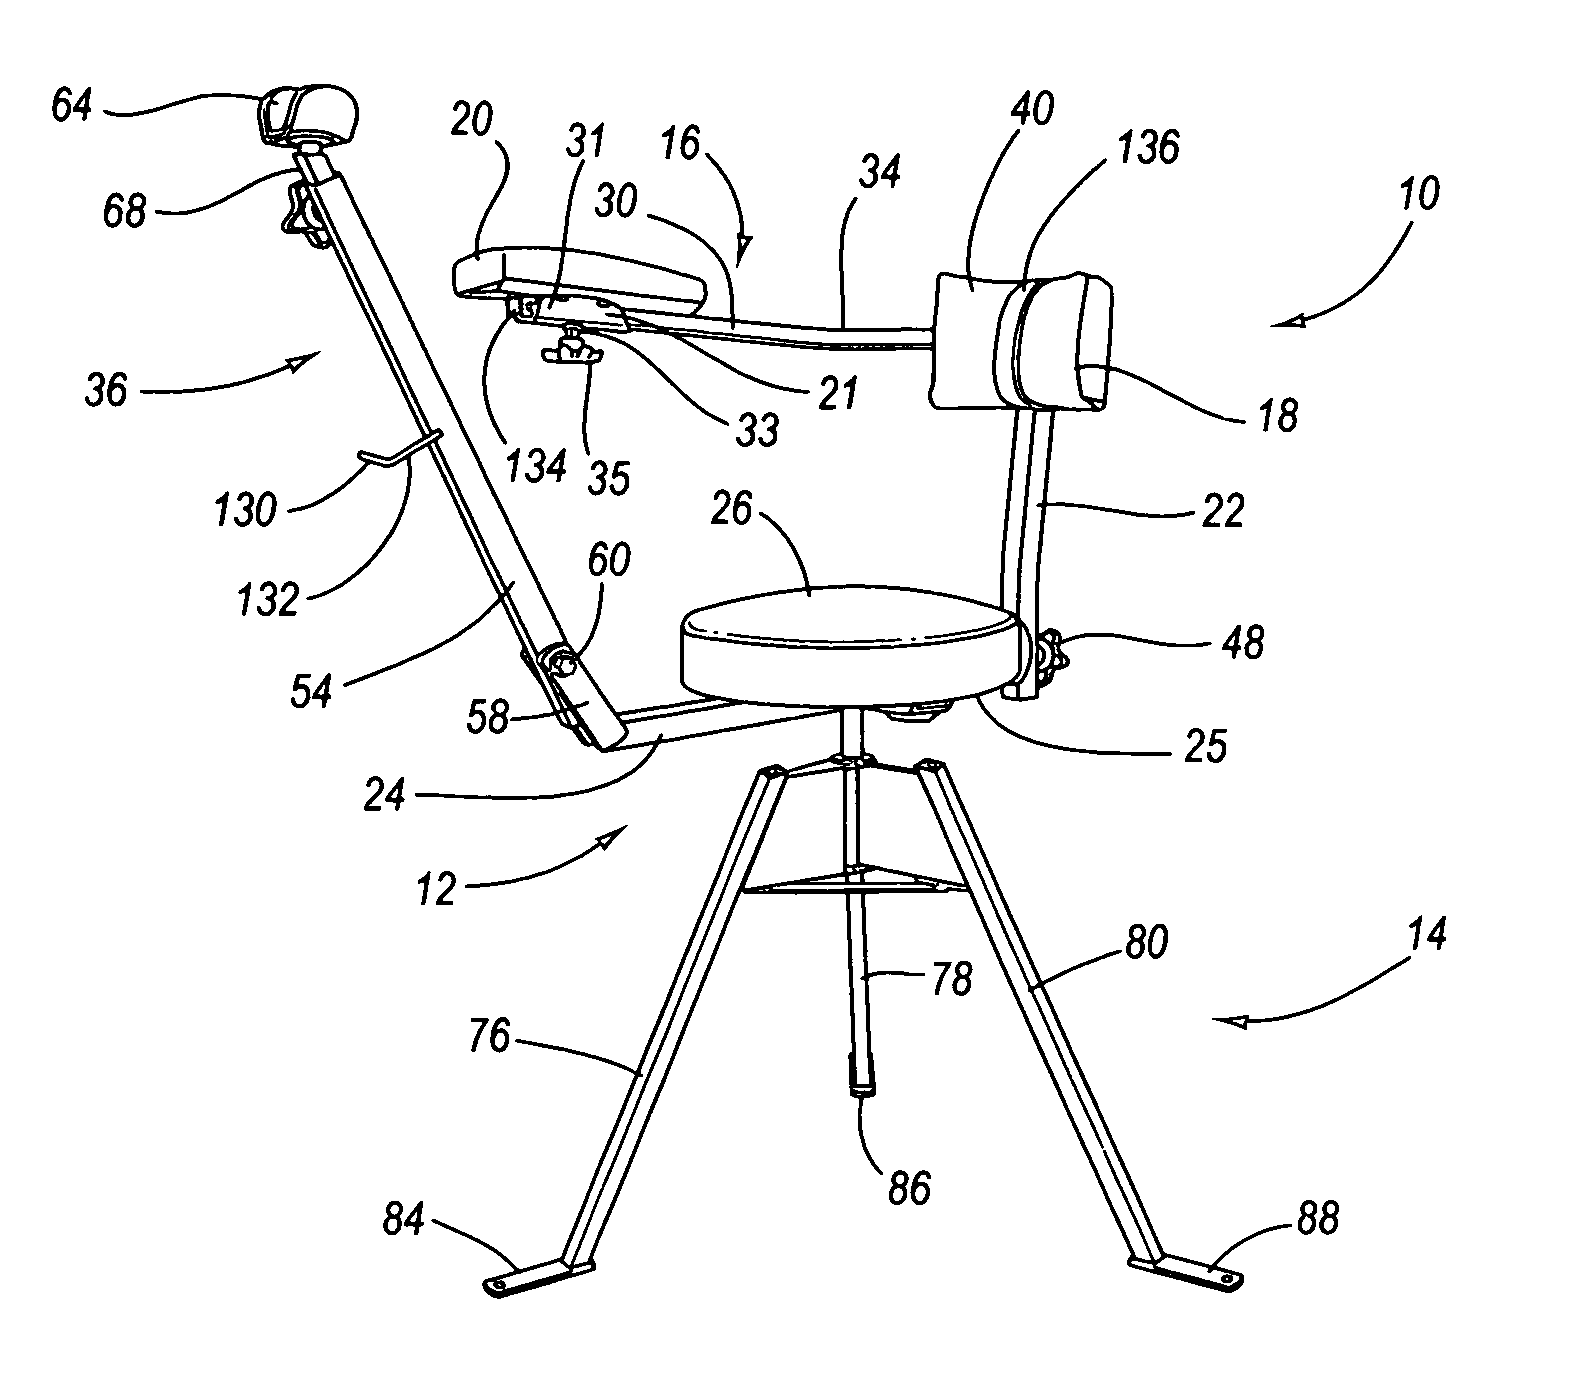 Foldable shooting chair